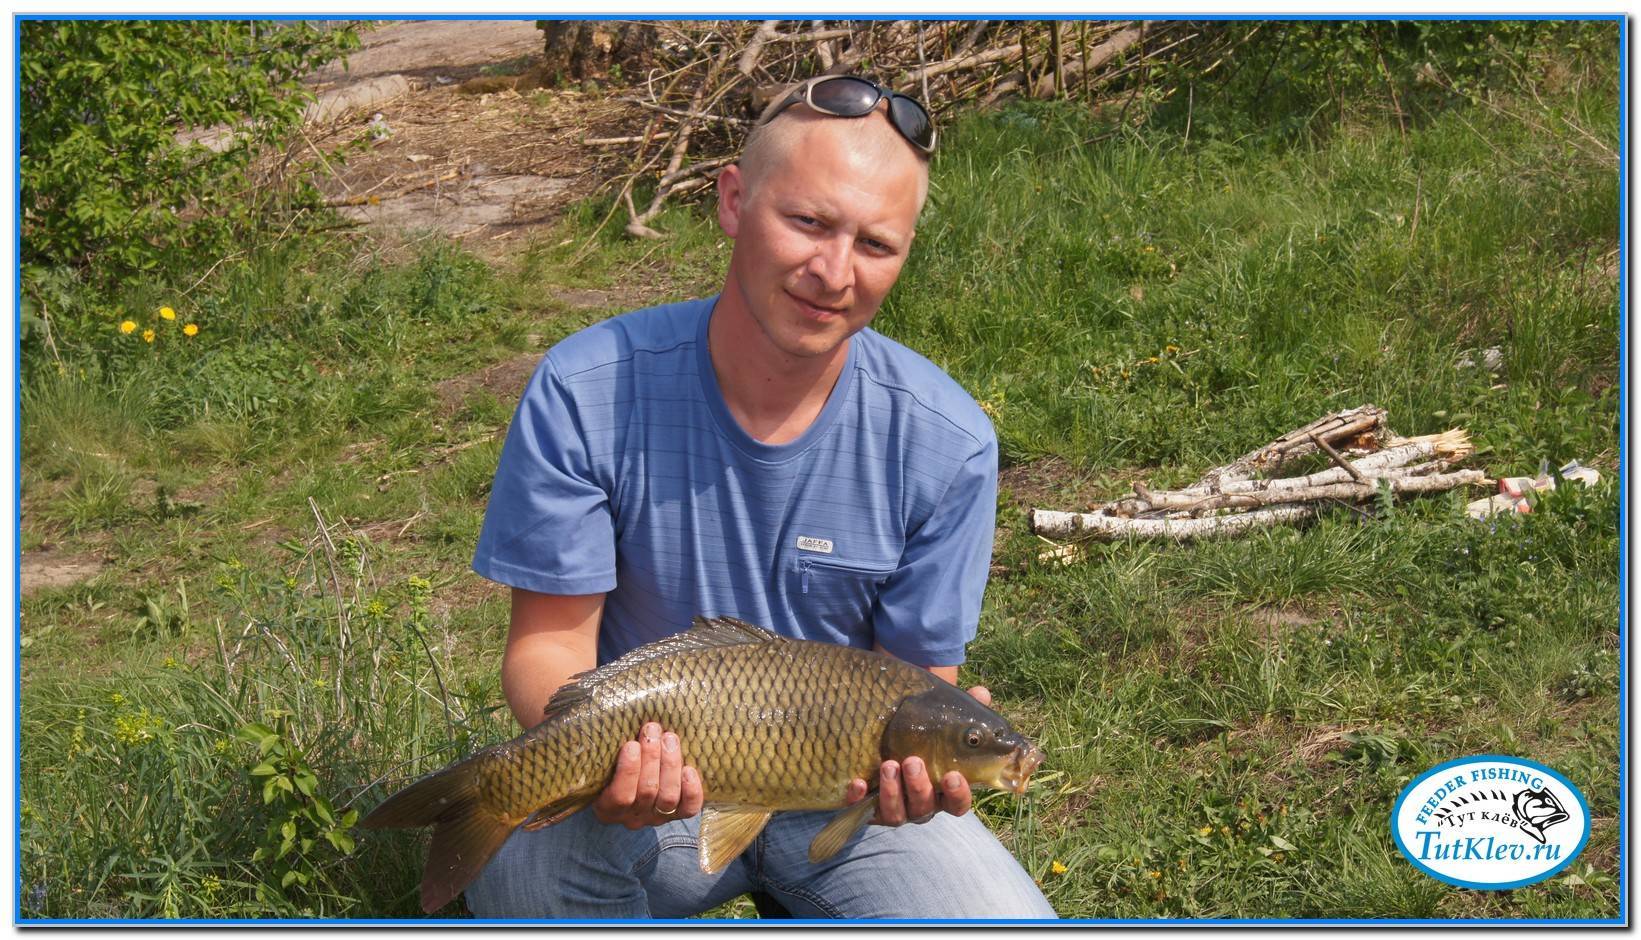 Рыбалка в белгороде и белгородской области 2020, рыбалка на хуторе крестов яковлевского района белгородской области 2020